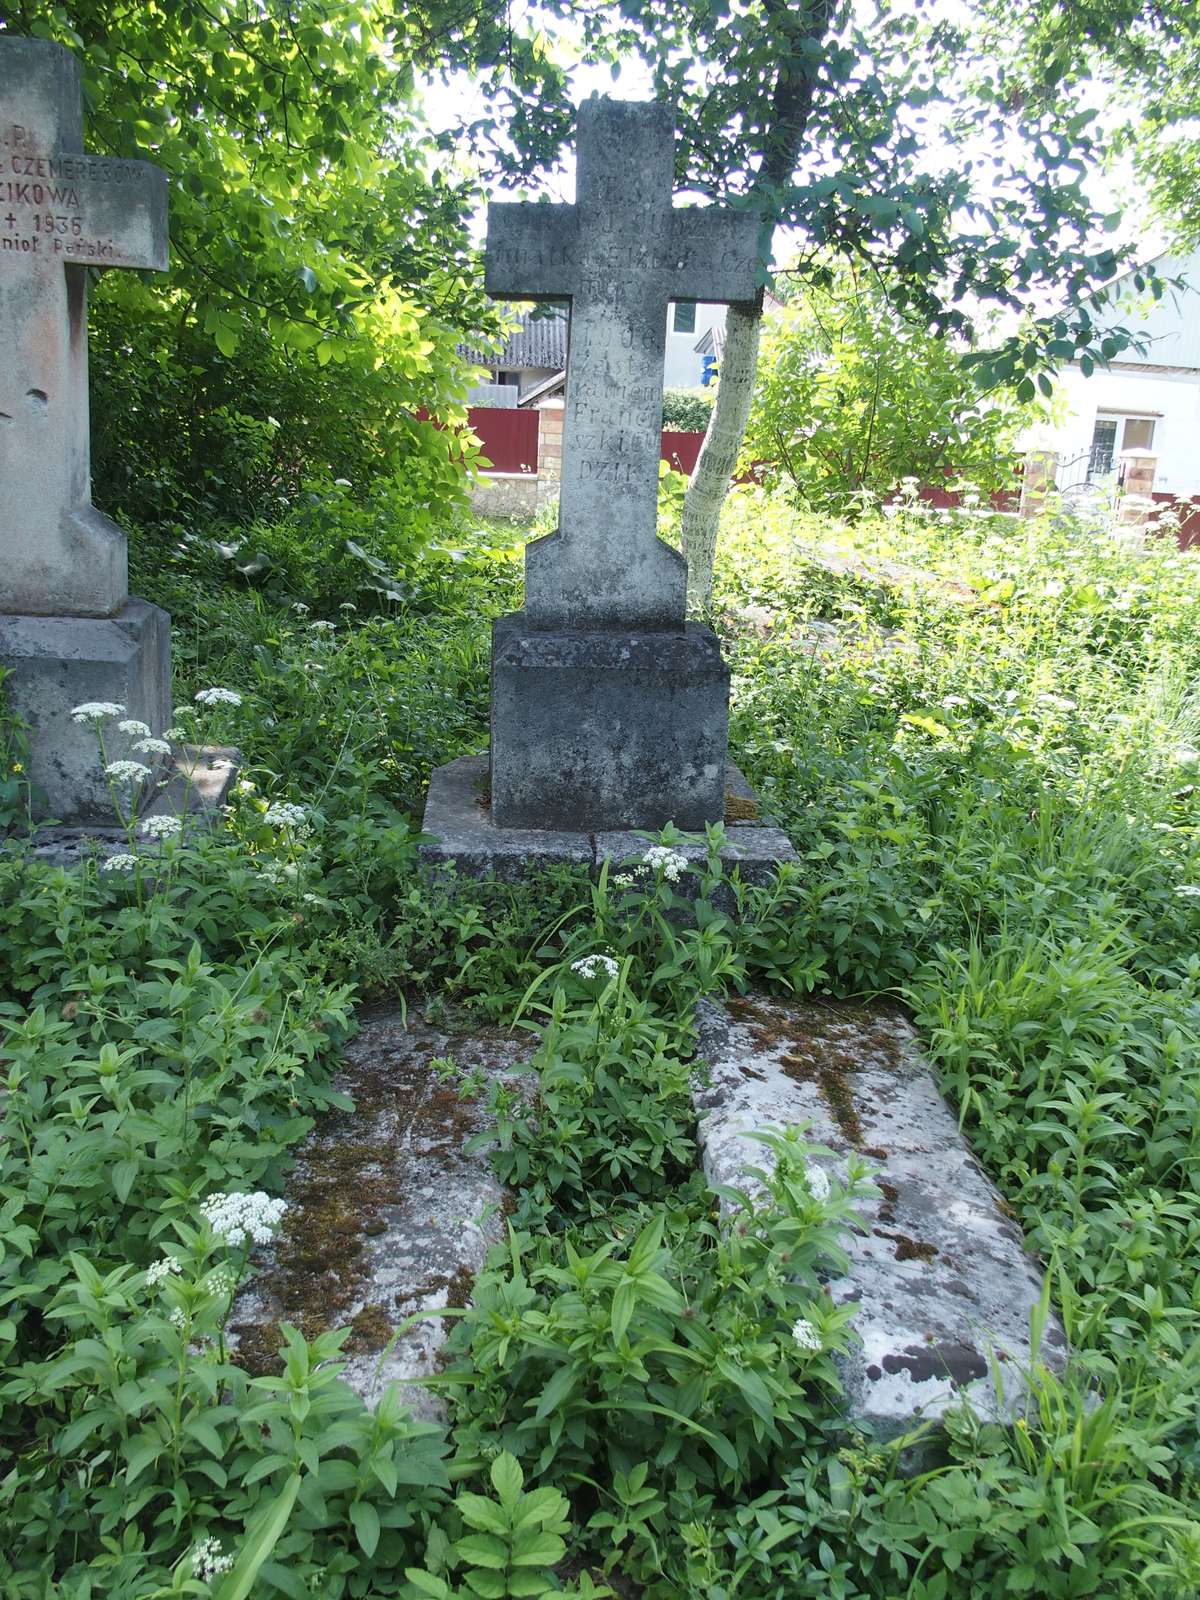 Tombstone of Maciej Cudzik and Elzbieta Czemerys, zbaraska cemetery, state before 2018